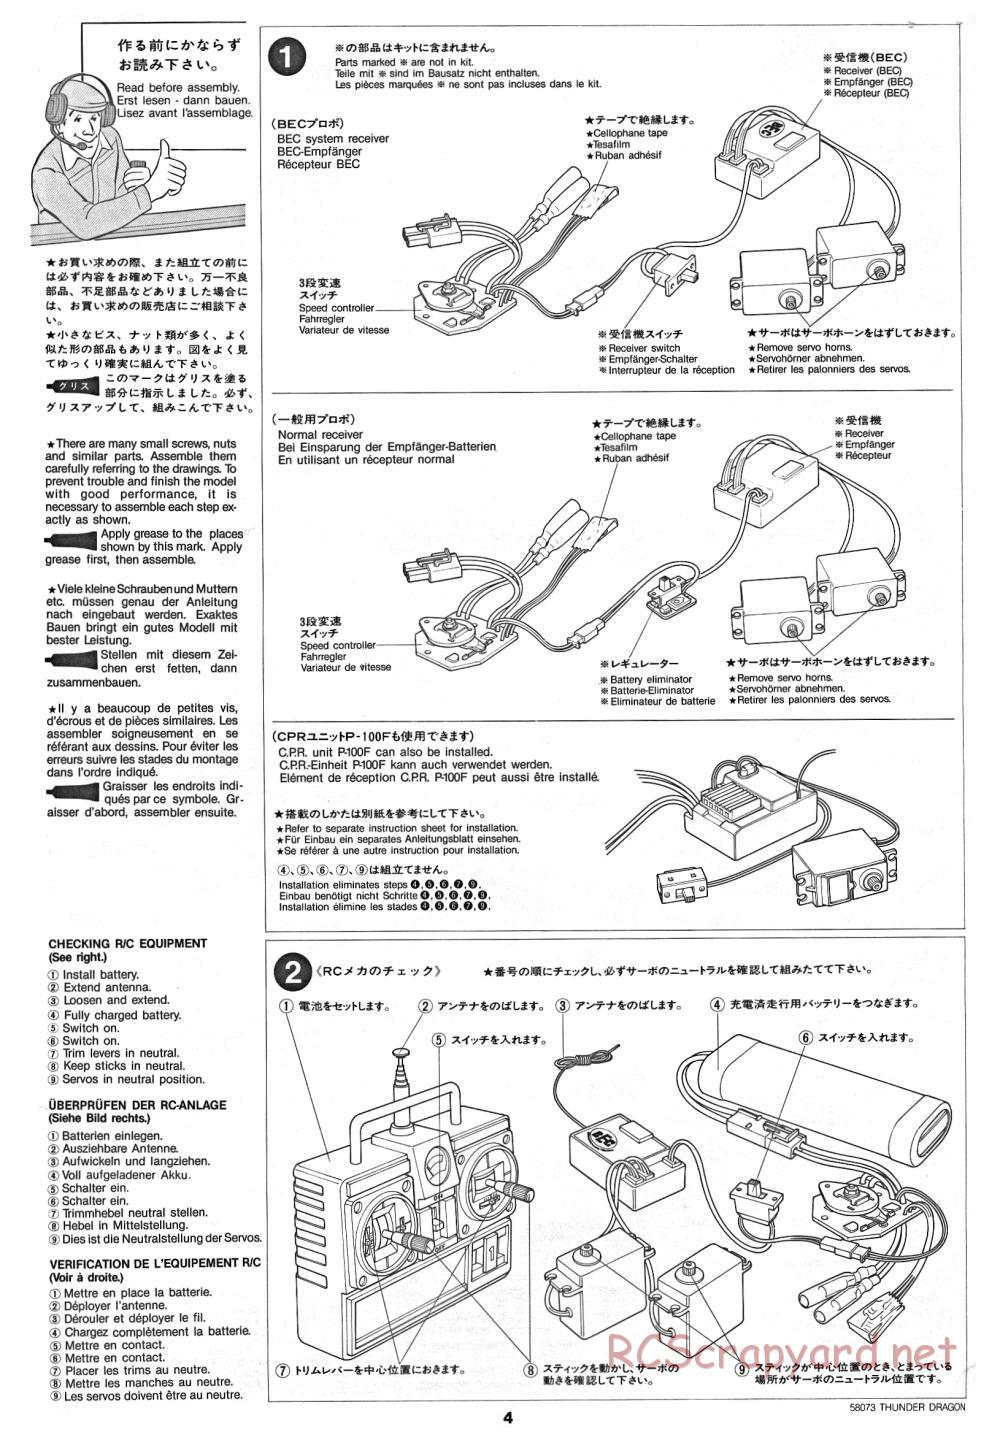 Tamiya - Thunder Dragon - 58073 - Manual - Page 4